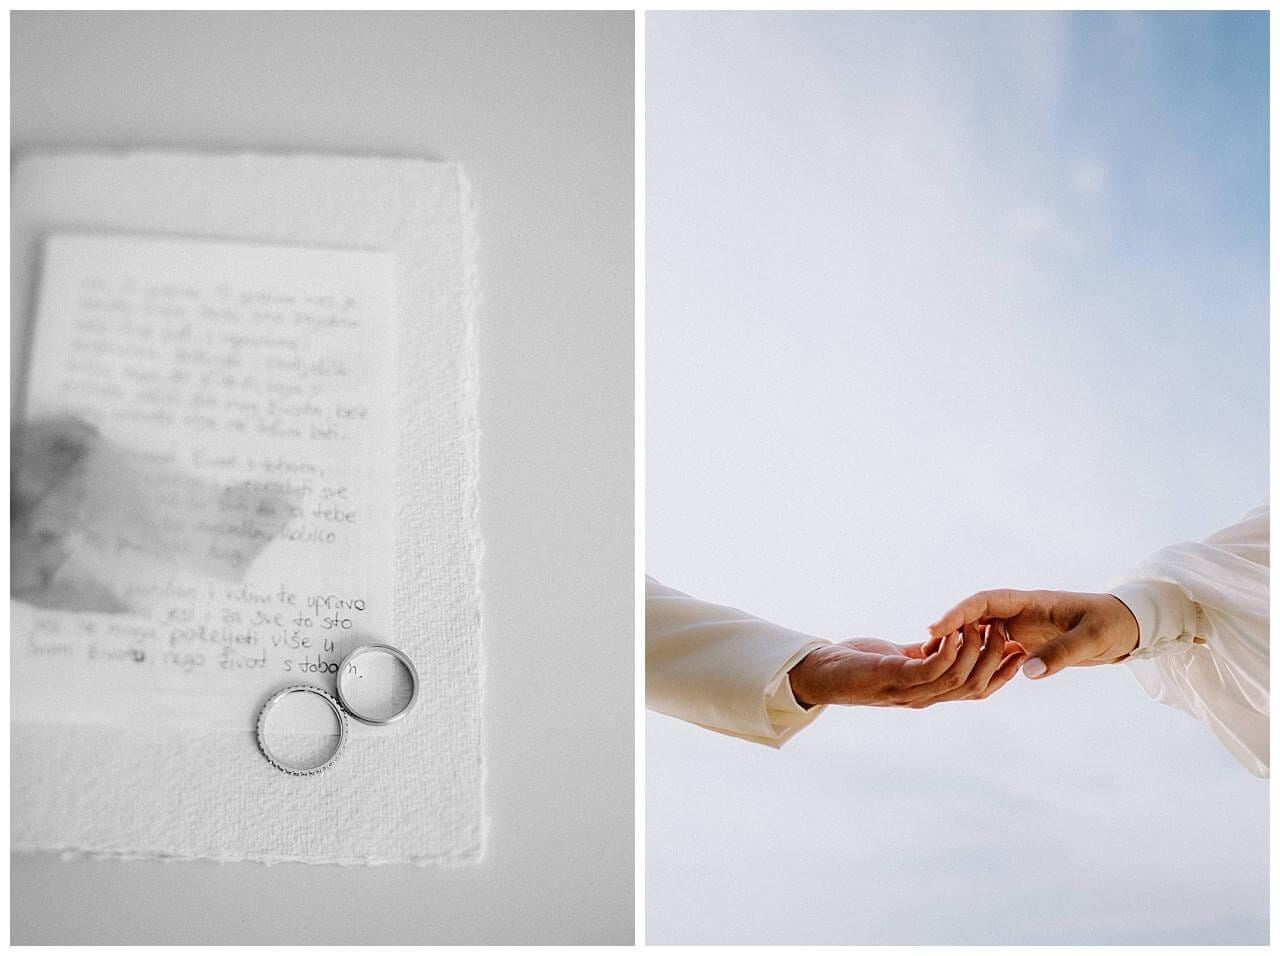 Eheringe und Hände des Brautpaars bei ihrer Hochzeit in Istrien Kroatien